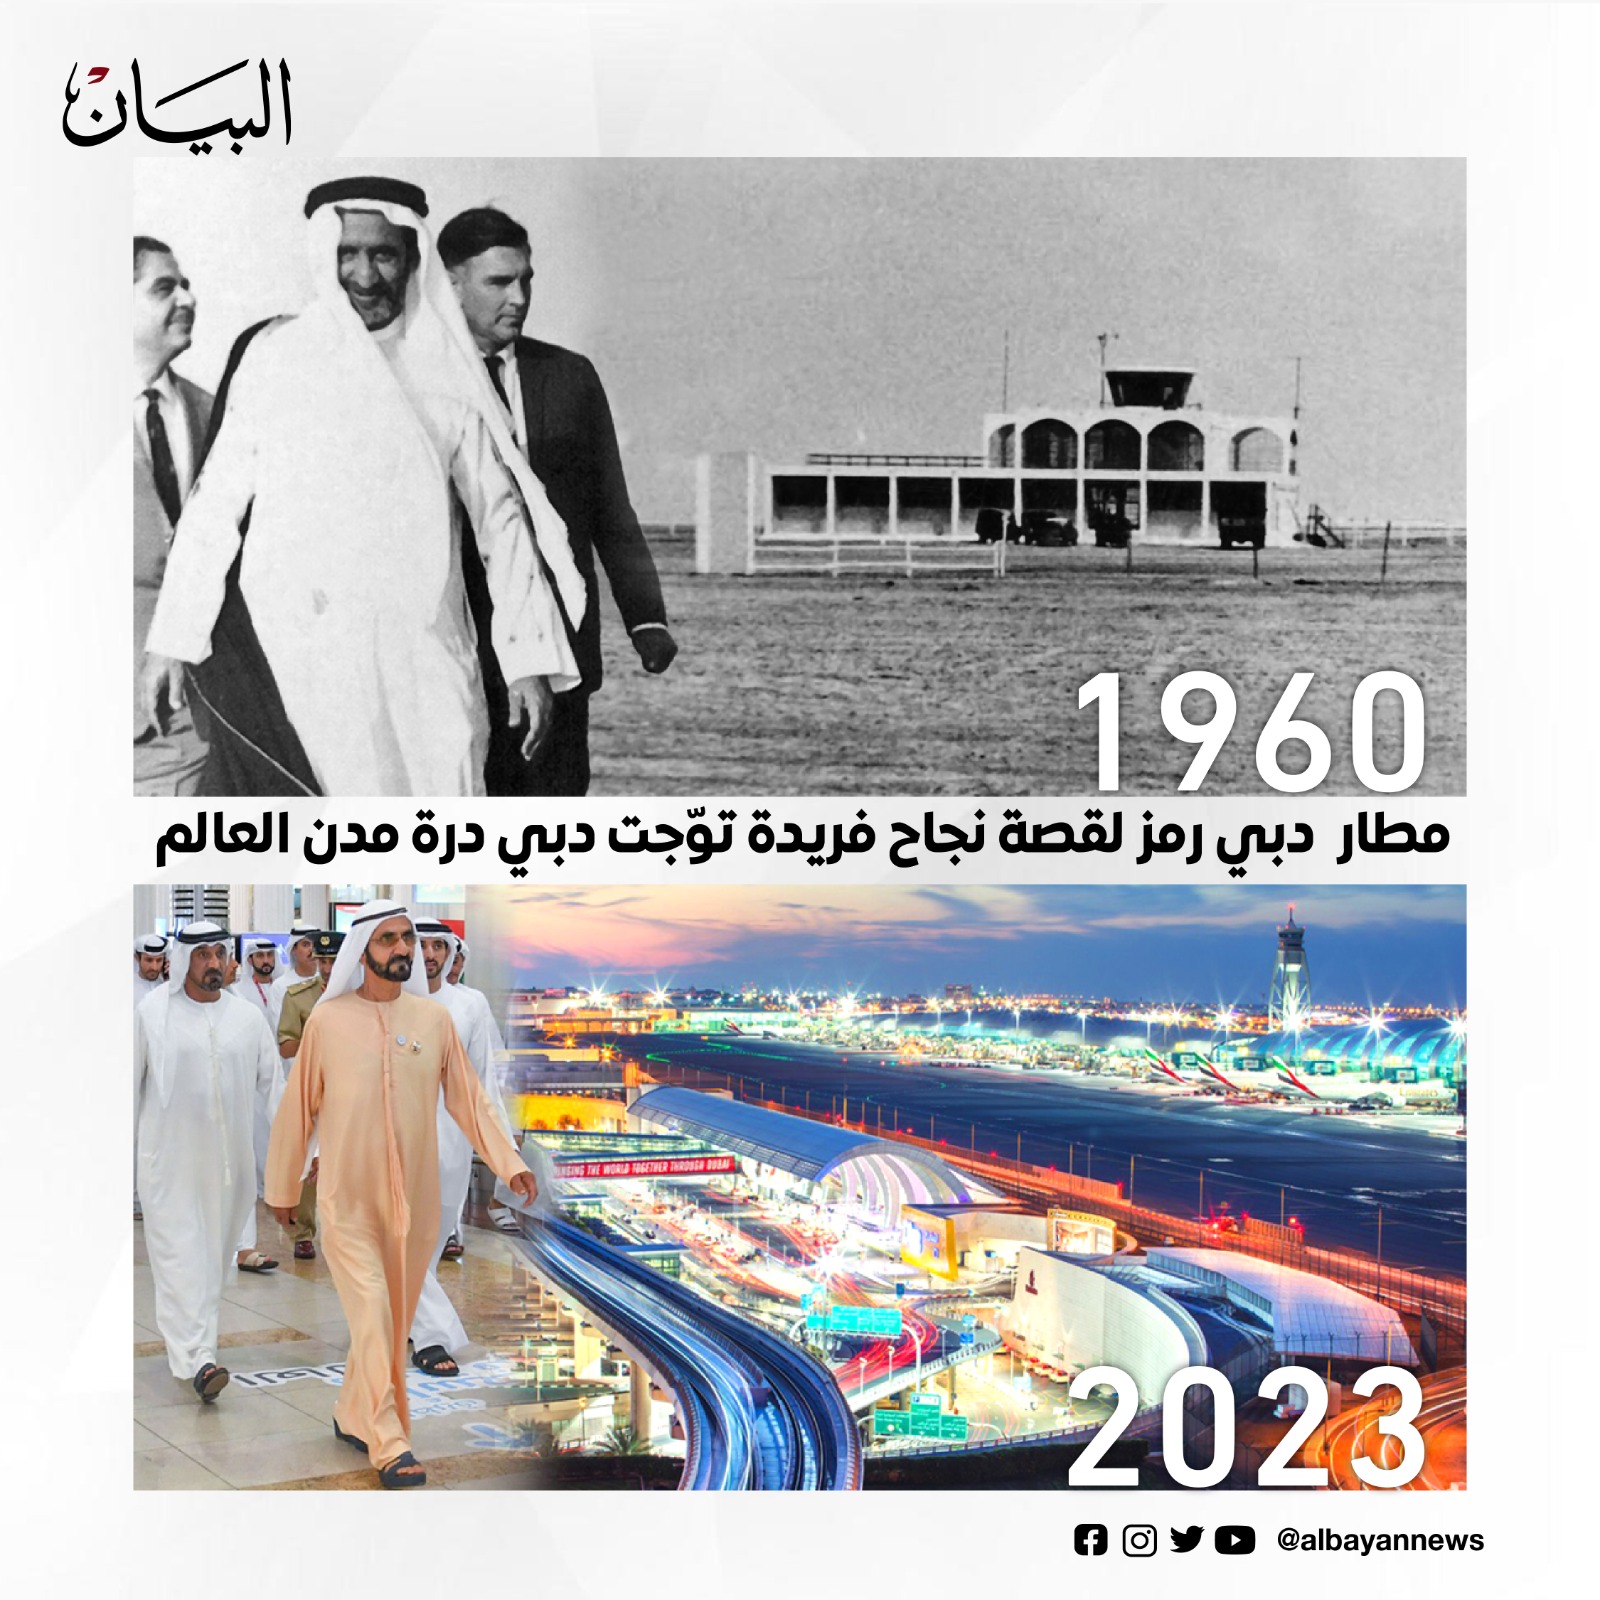 مطار دبي رمز لقصة نجاح توجت درة مدن العالم